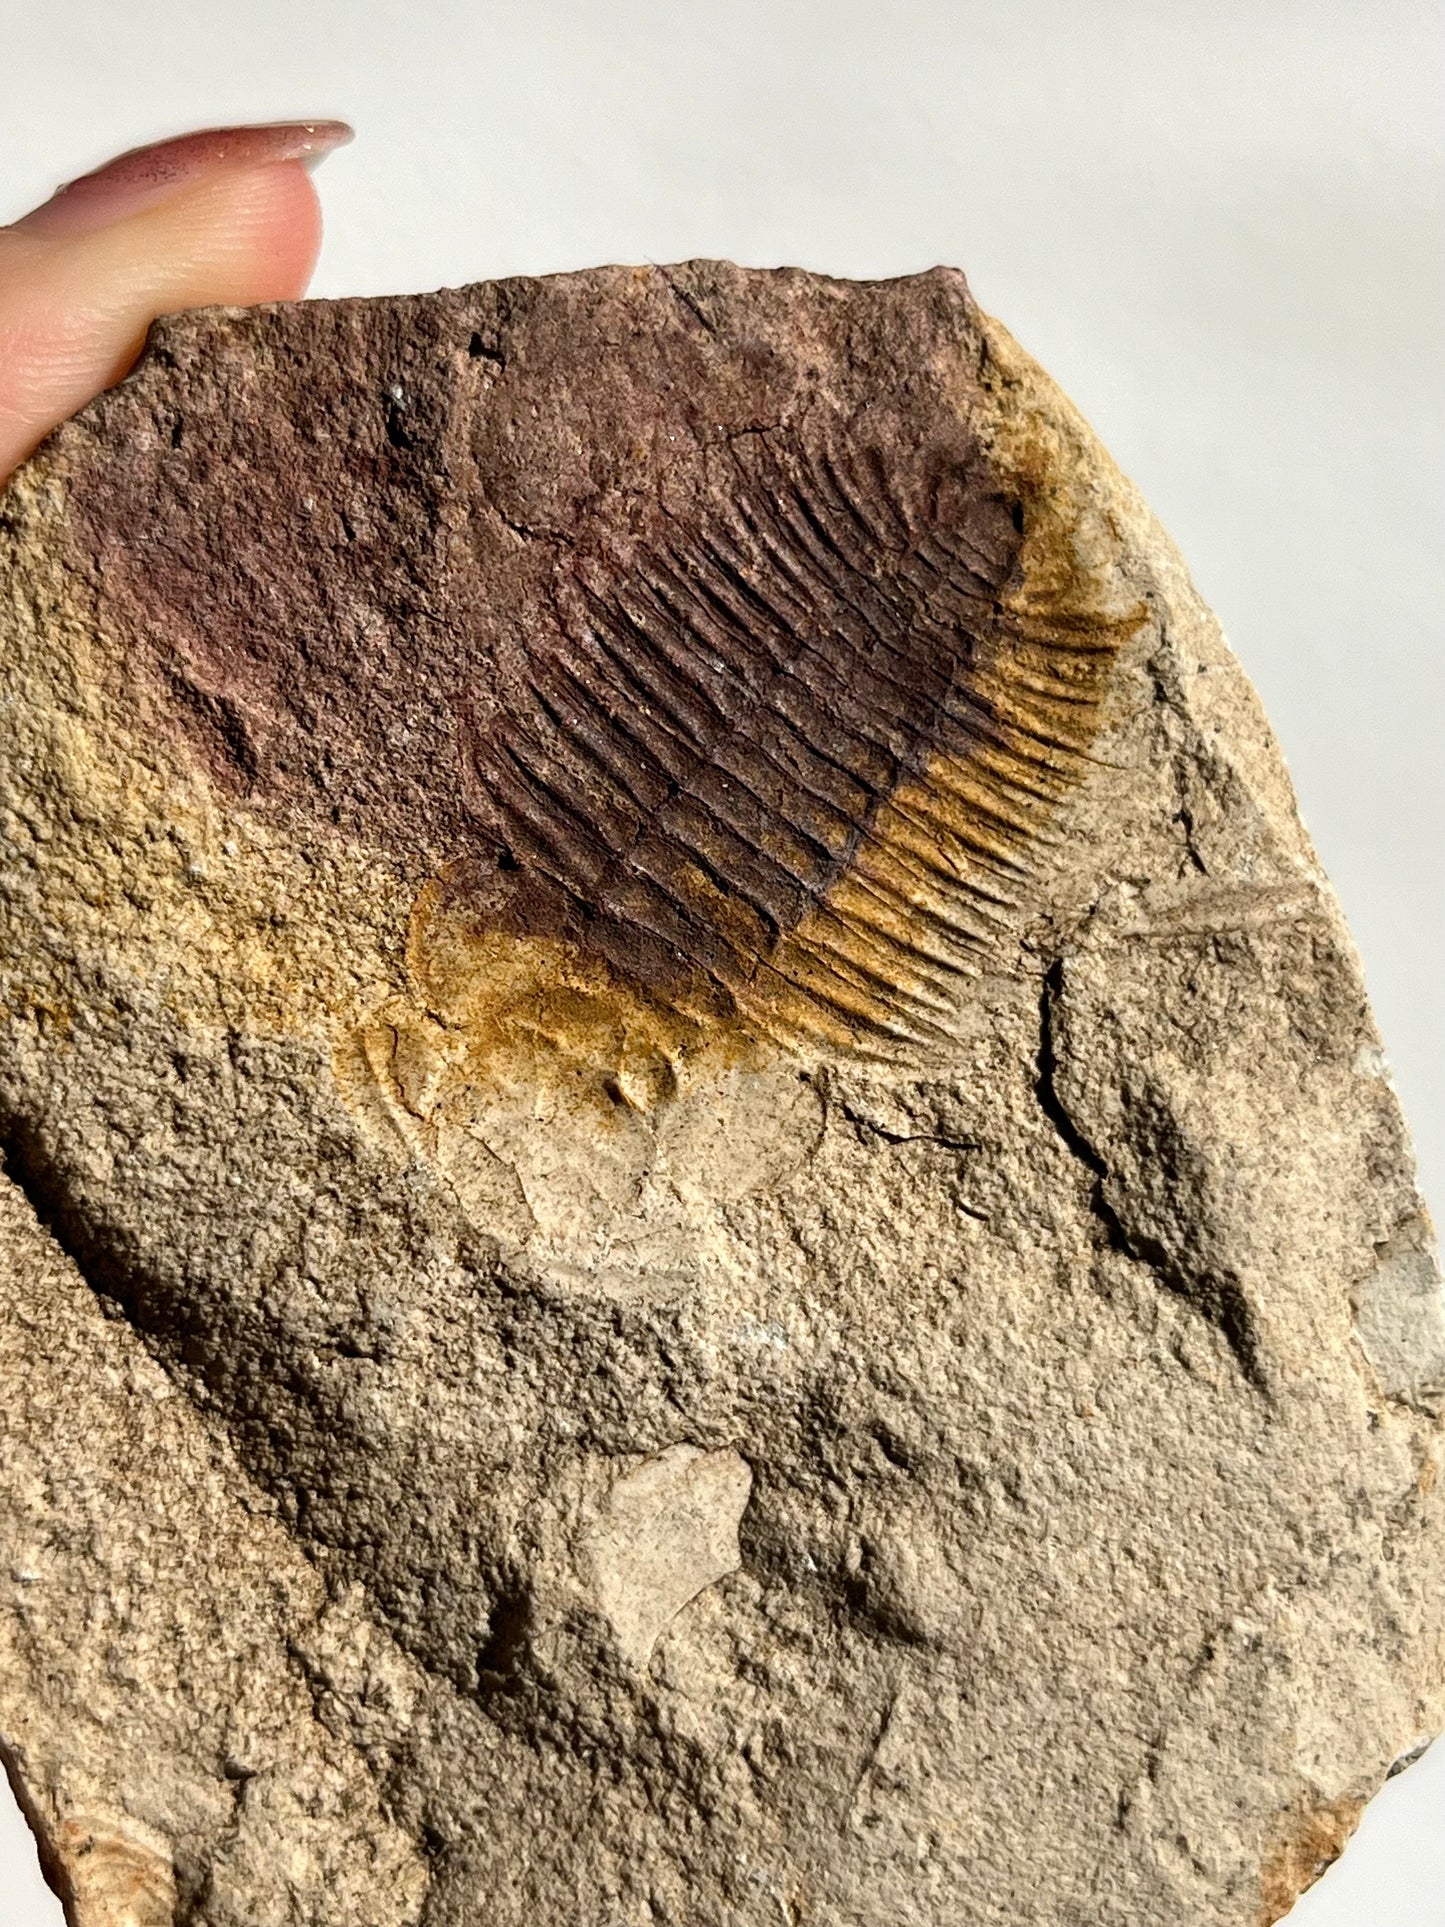 Trilobite Fossil Impression in Sedimentary Rock #1